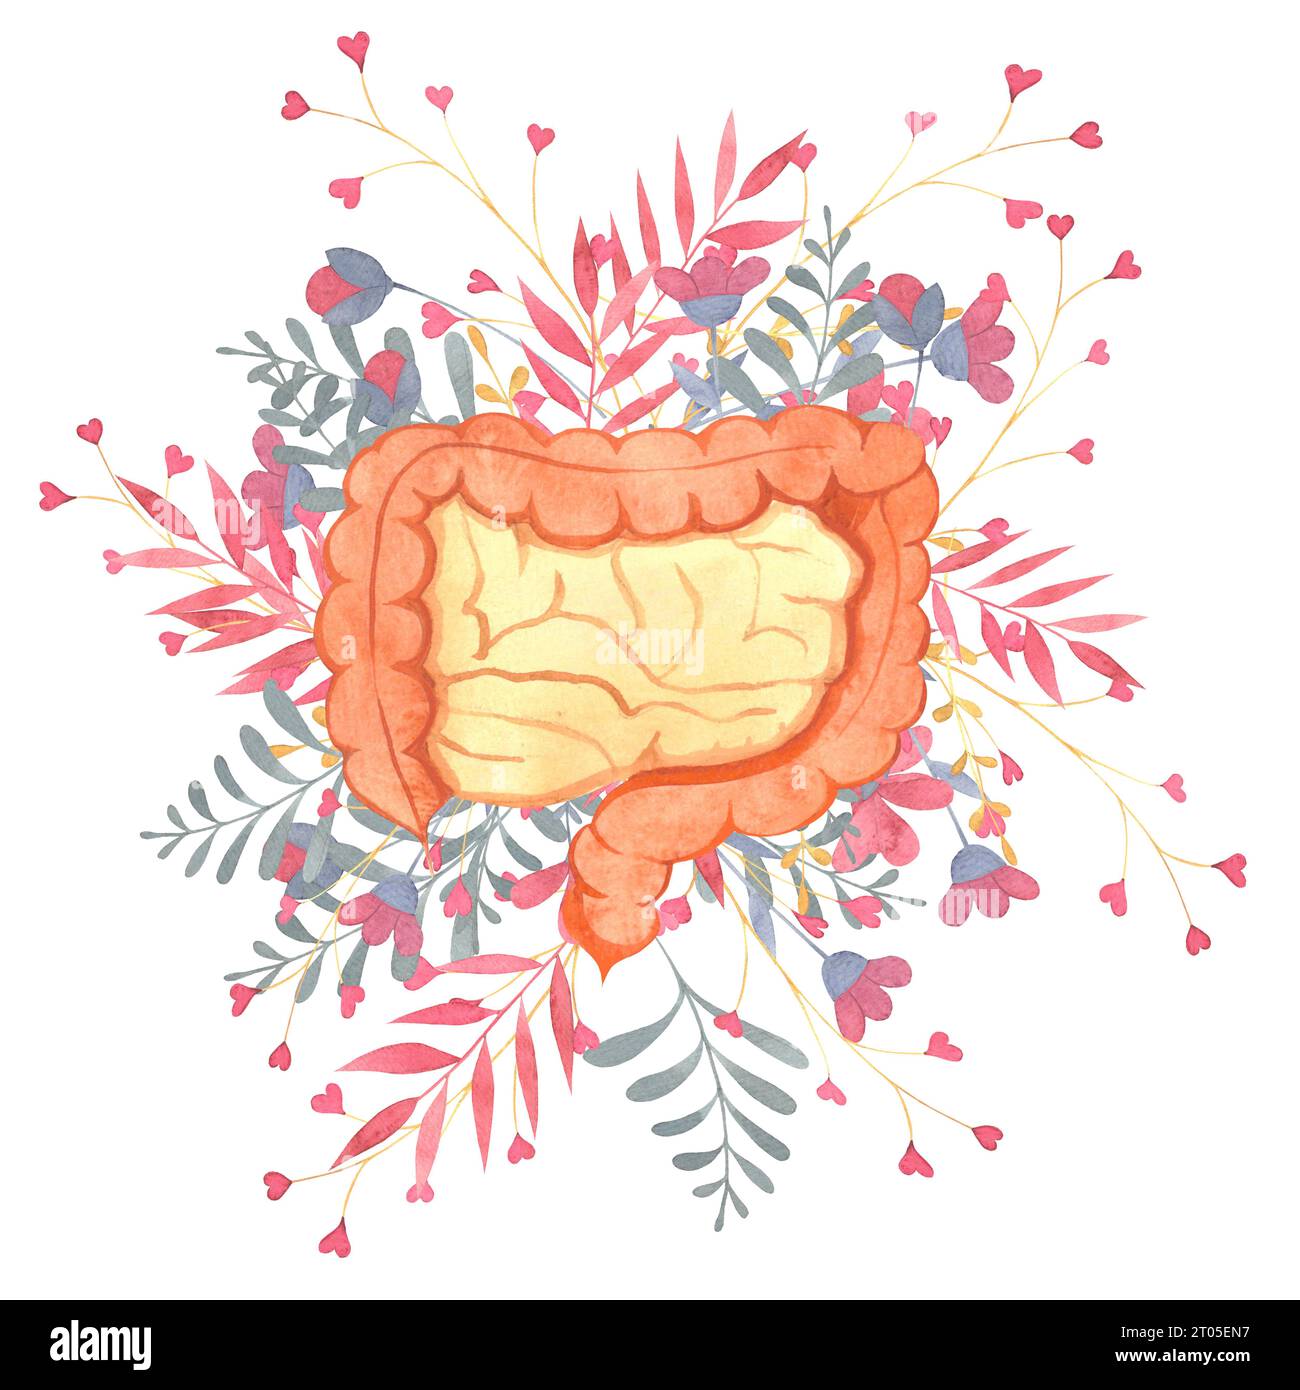 intestins humains, organes internes humains, fleurs, brindilles, illustration à l'aquarelle pour le thème de cardiologie Banque D'Images